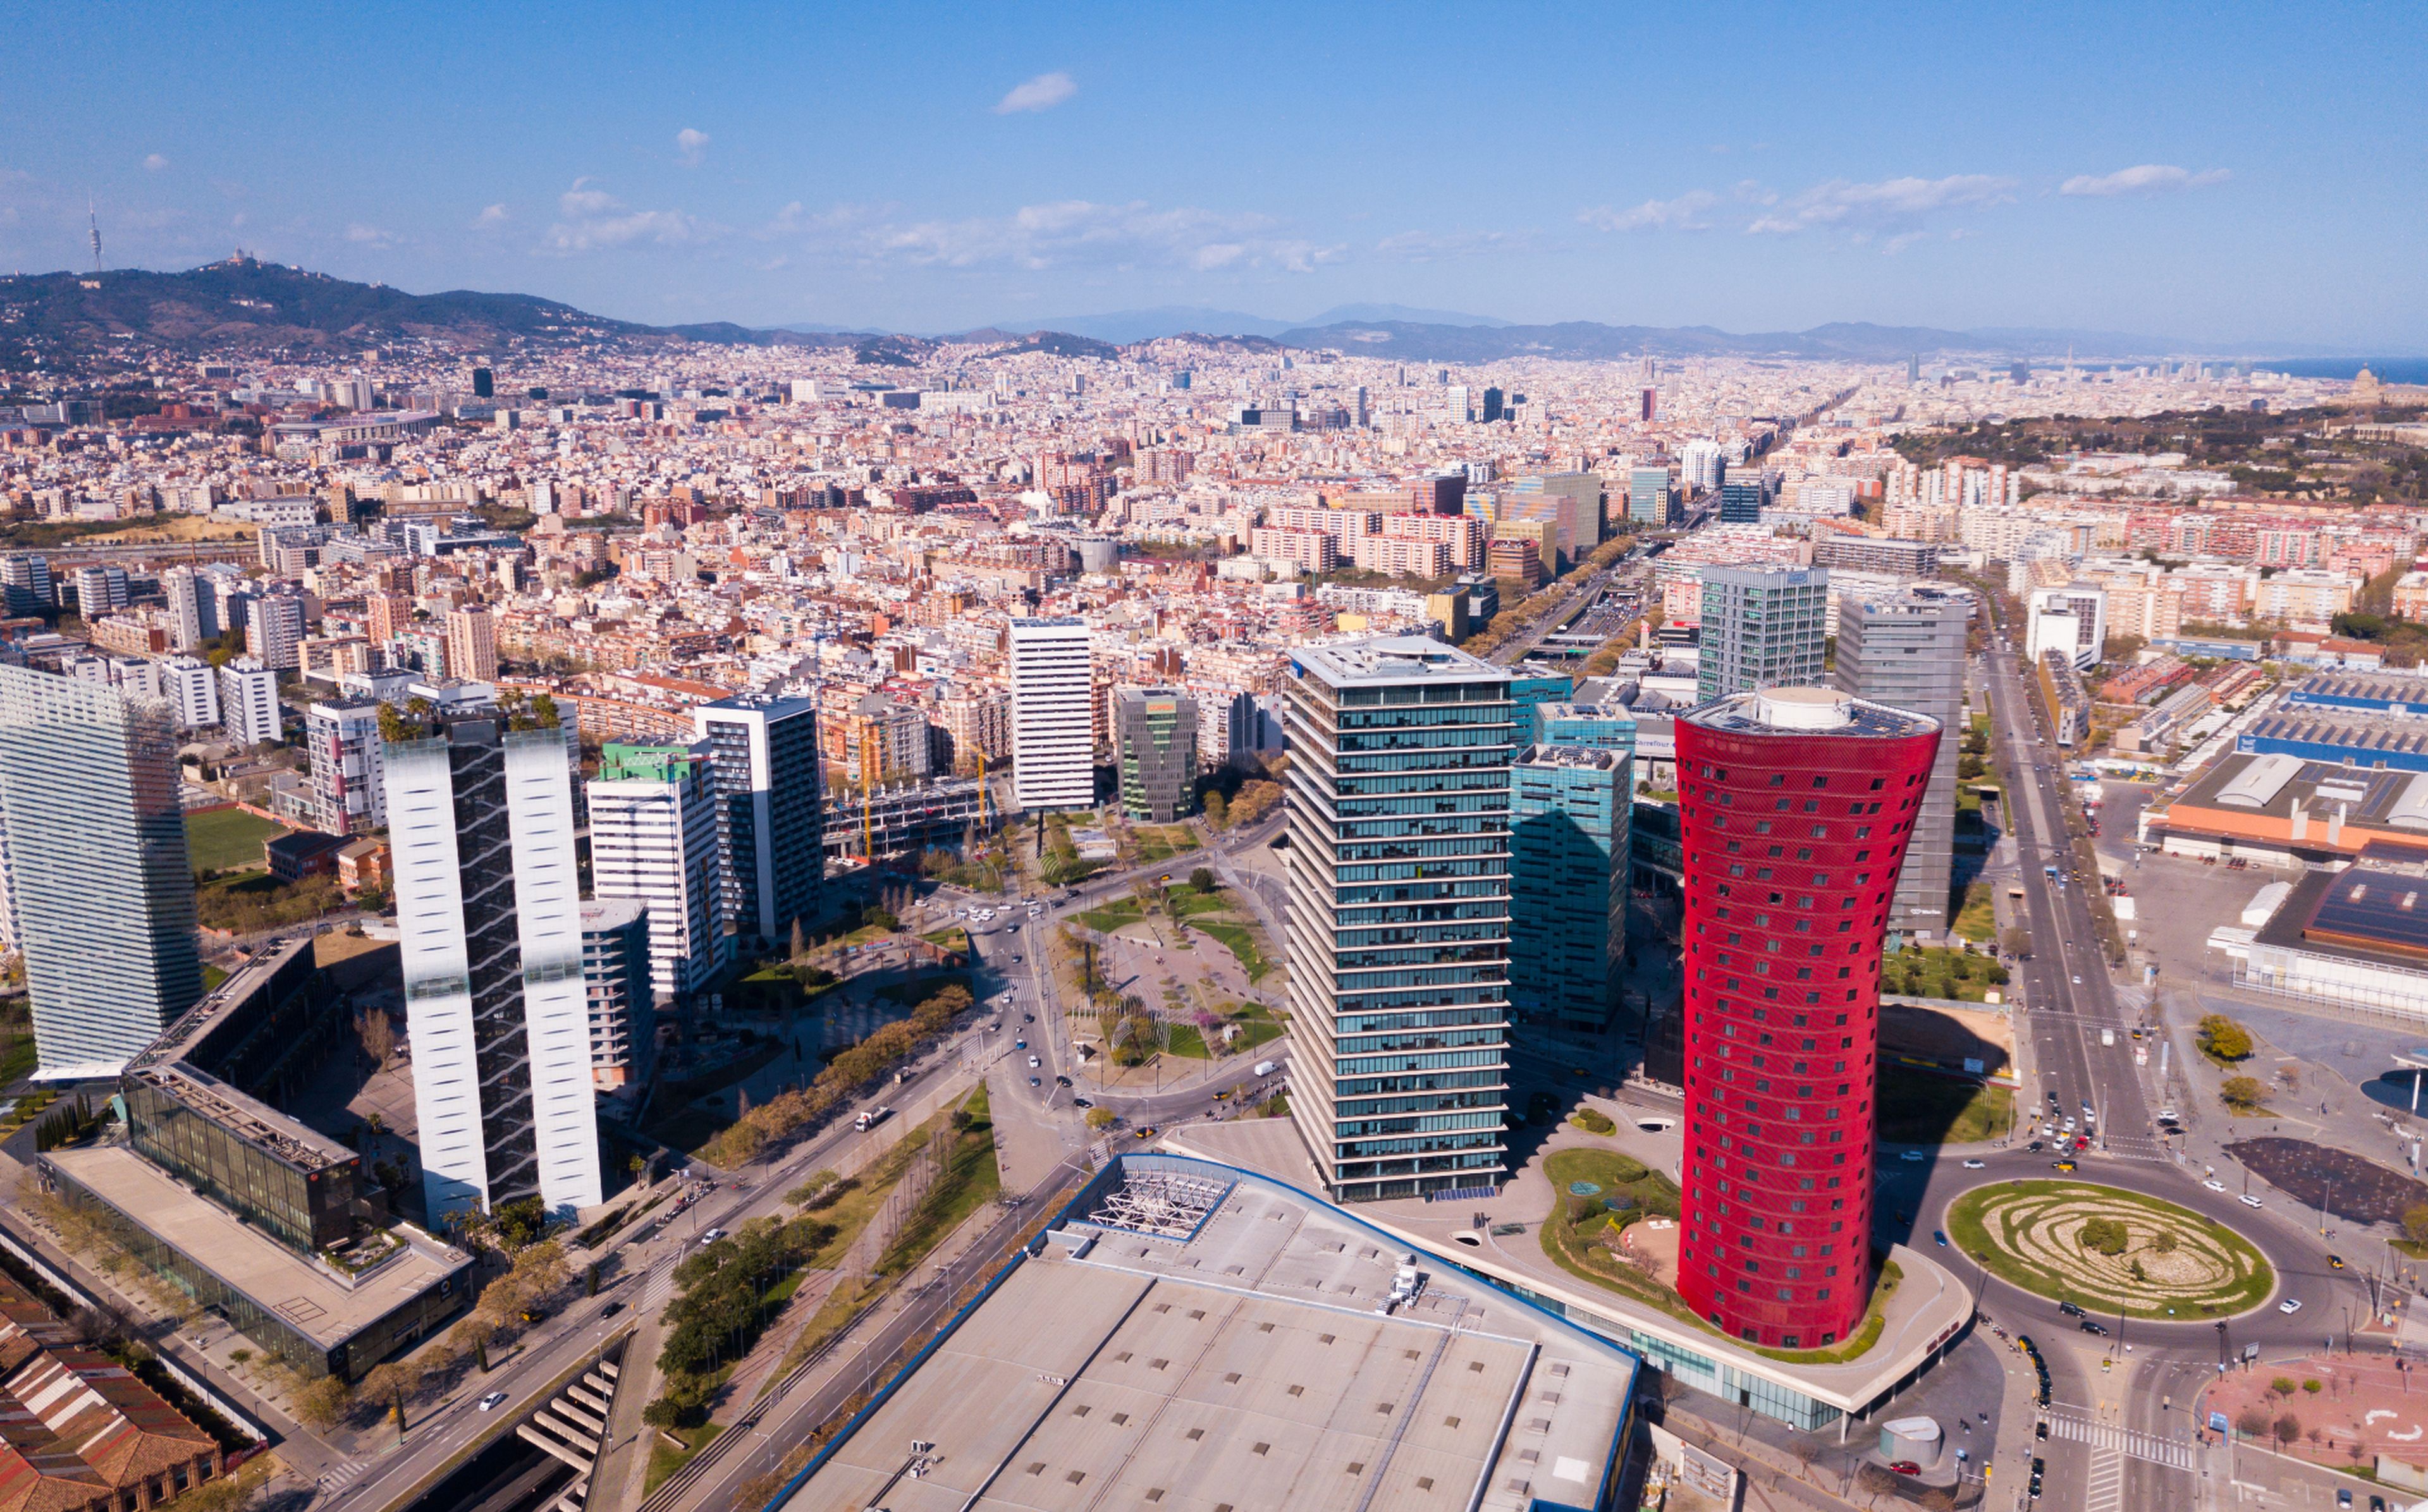 Vista aérea de L'Hospitalet de Llobregat (Barcelona)